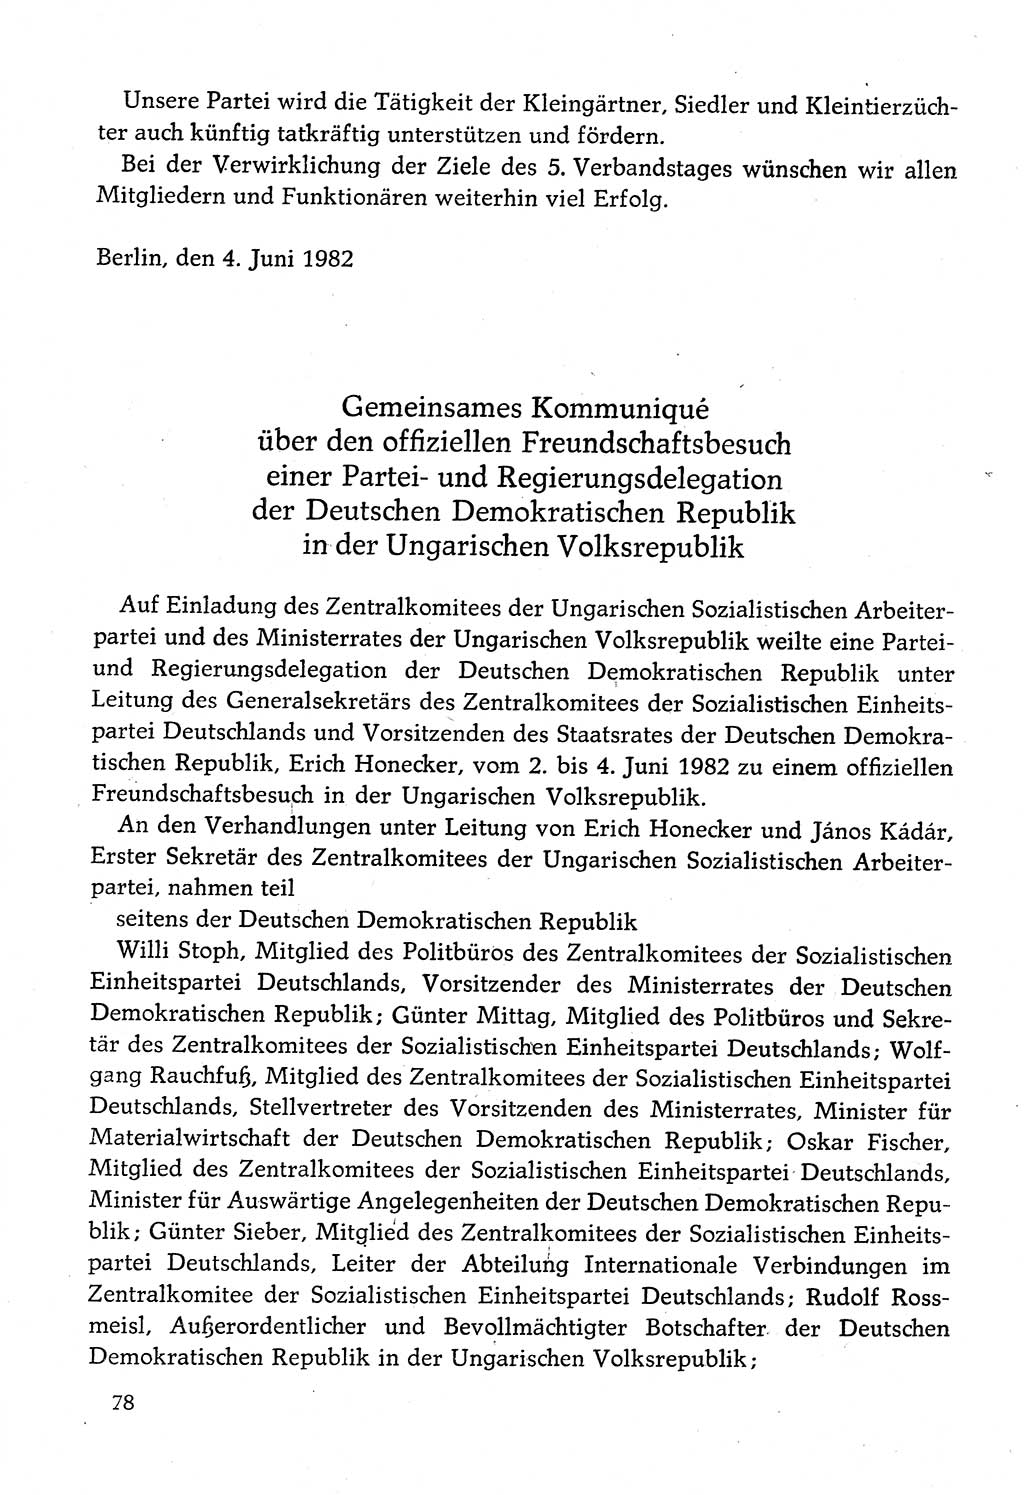 Dokumente der Sozialistischen Einheitspartei Deutschlands (SED) [Deutsche Demokratische Republik (DDR)] 1982-1983, Seite 78 (Dok. SED DDR 1982-1983, S. 78)